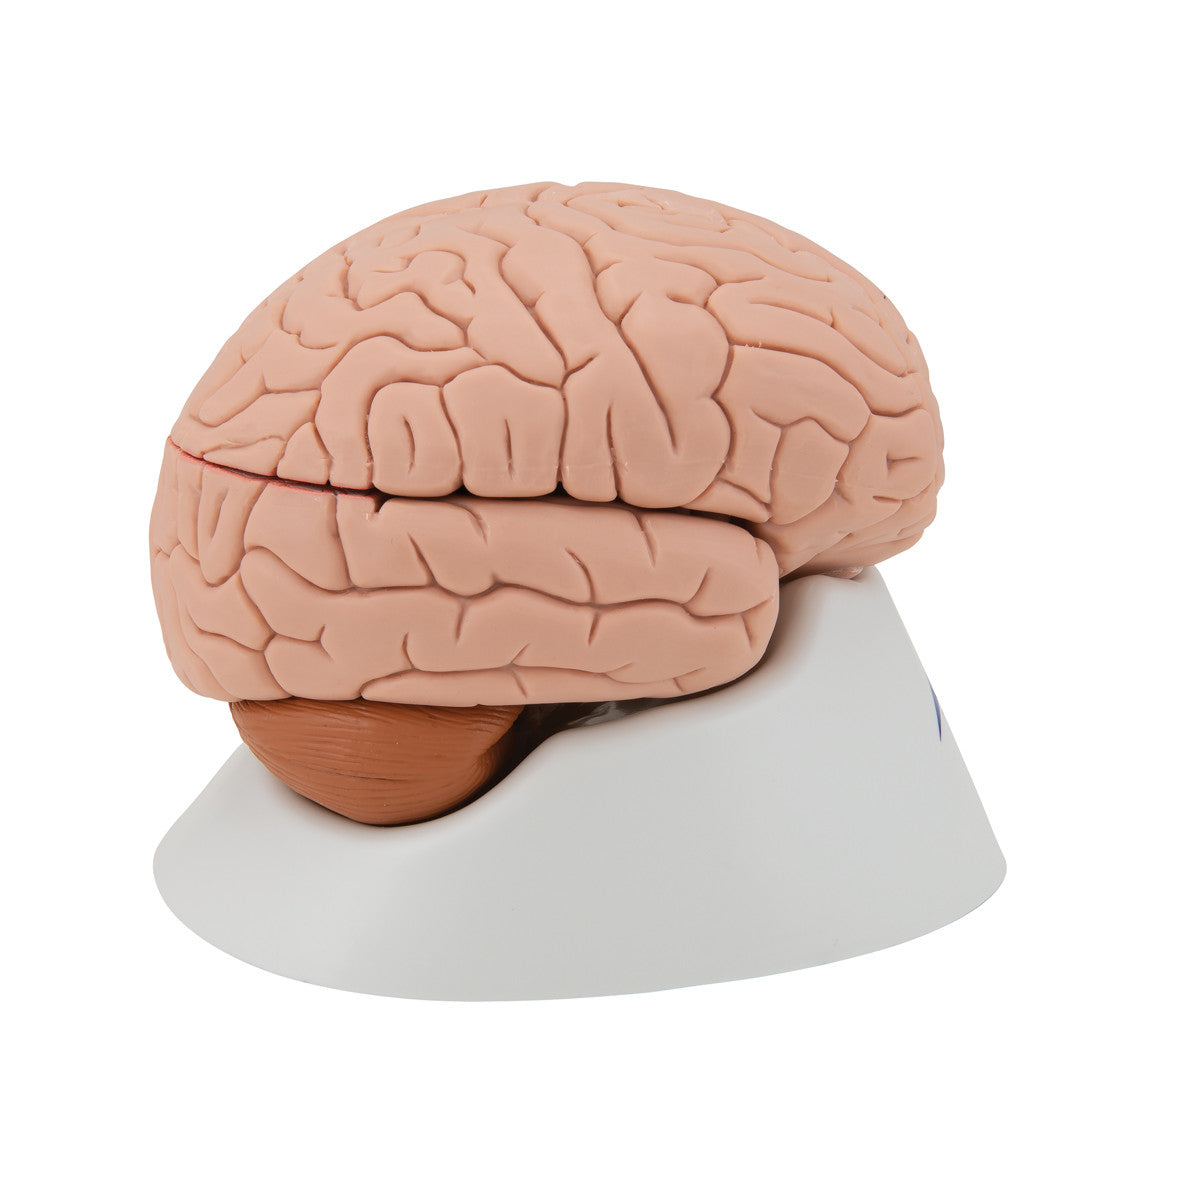 Brain Model, 4 parts | 3B Scientific C16